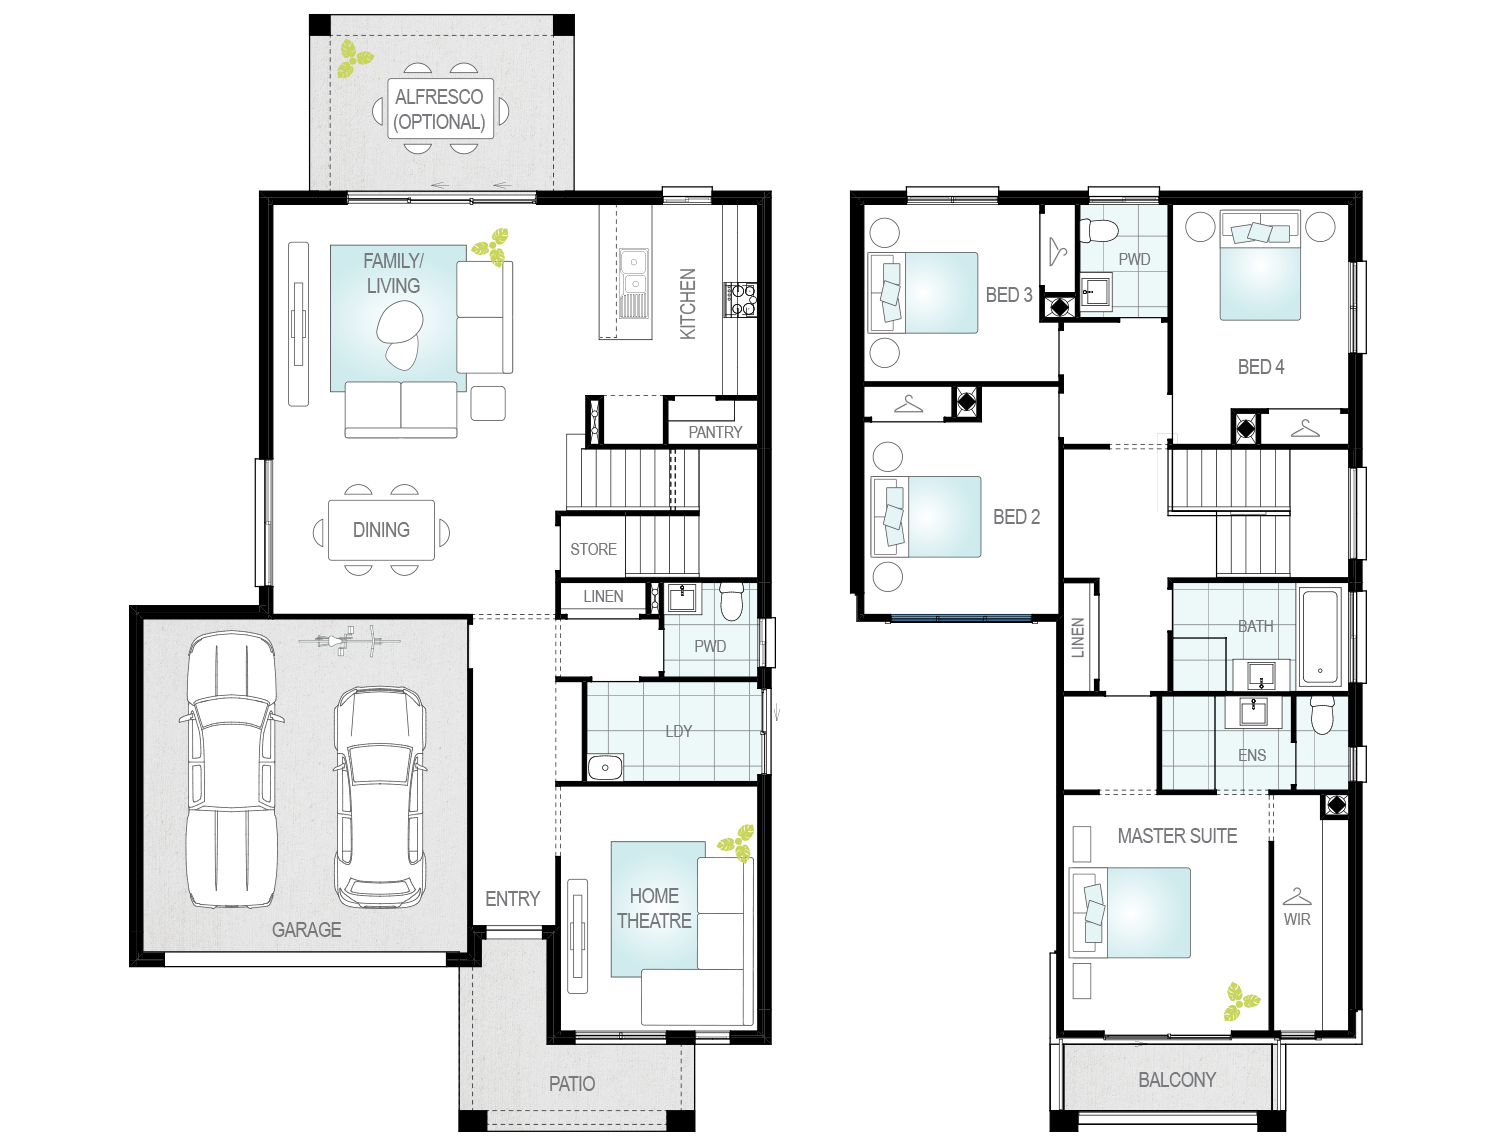 Altessa one floor plan_MIRROR_0.png 